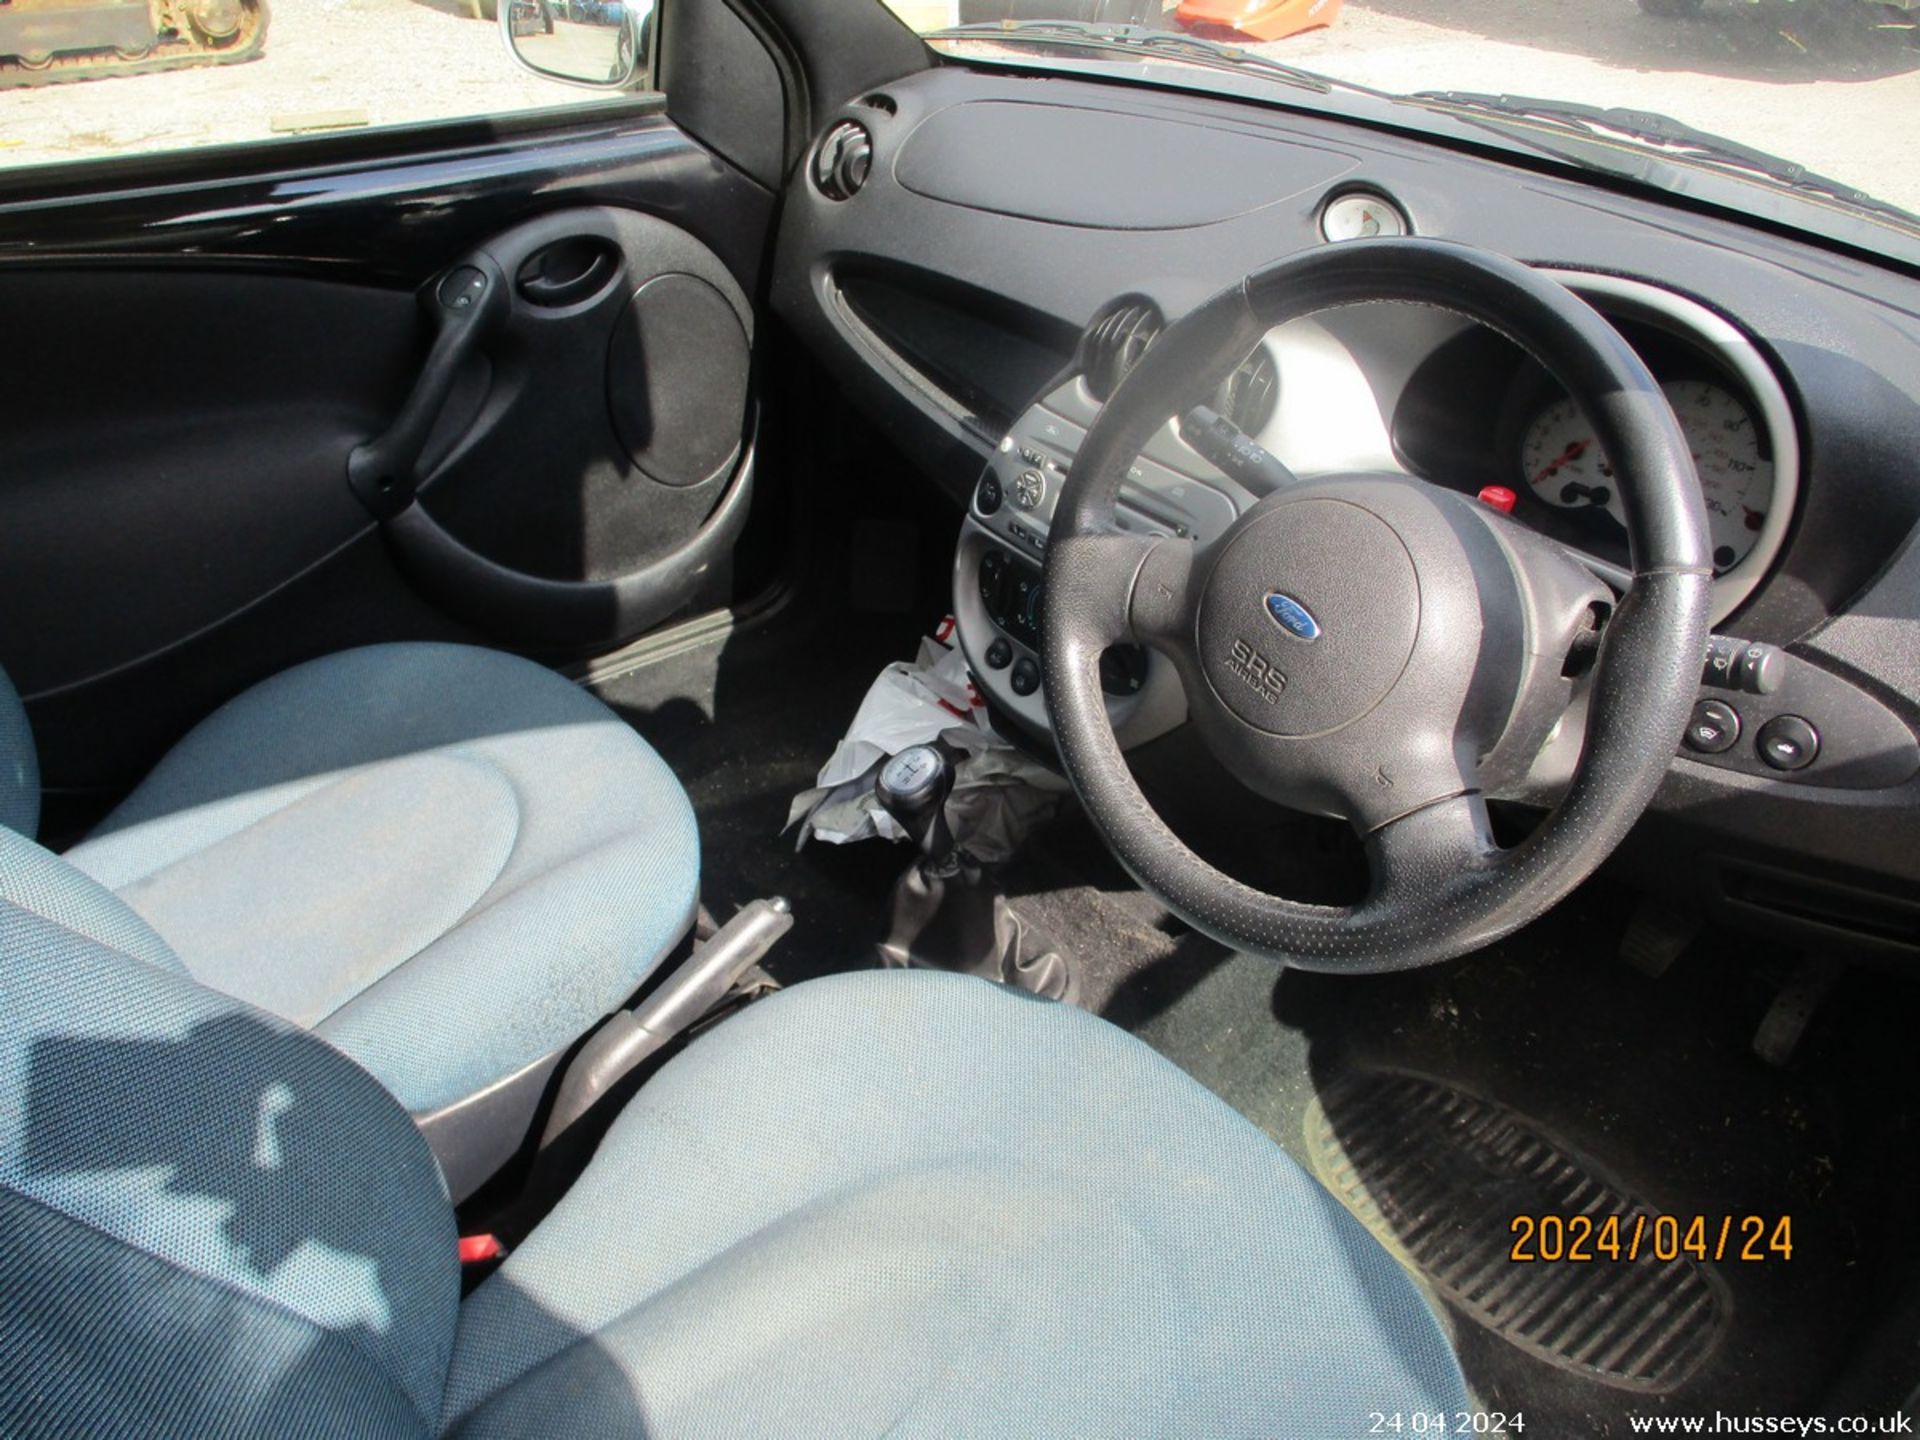 08/08 FORD KA ZETEC CLIMATE - 1297cc 3dr Hatchback (Black/silver, 95k) - Image 20 of 25